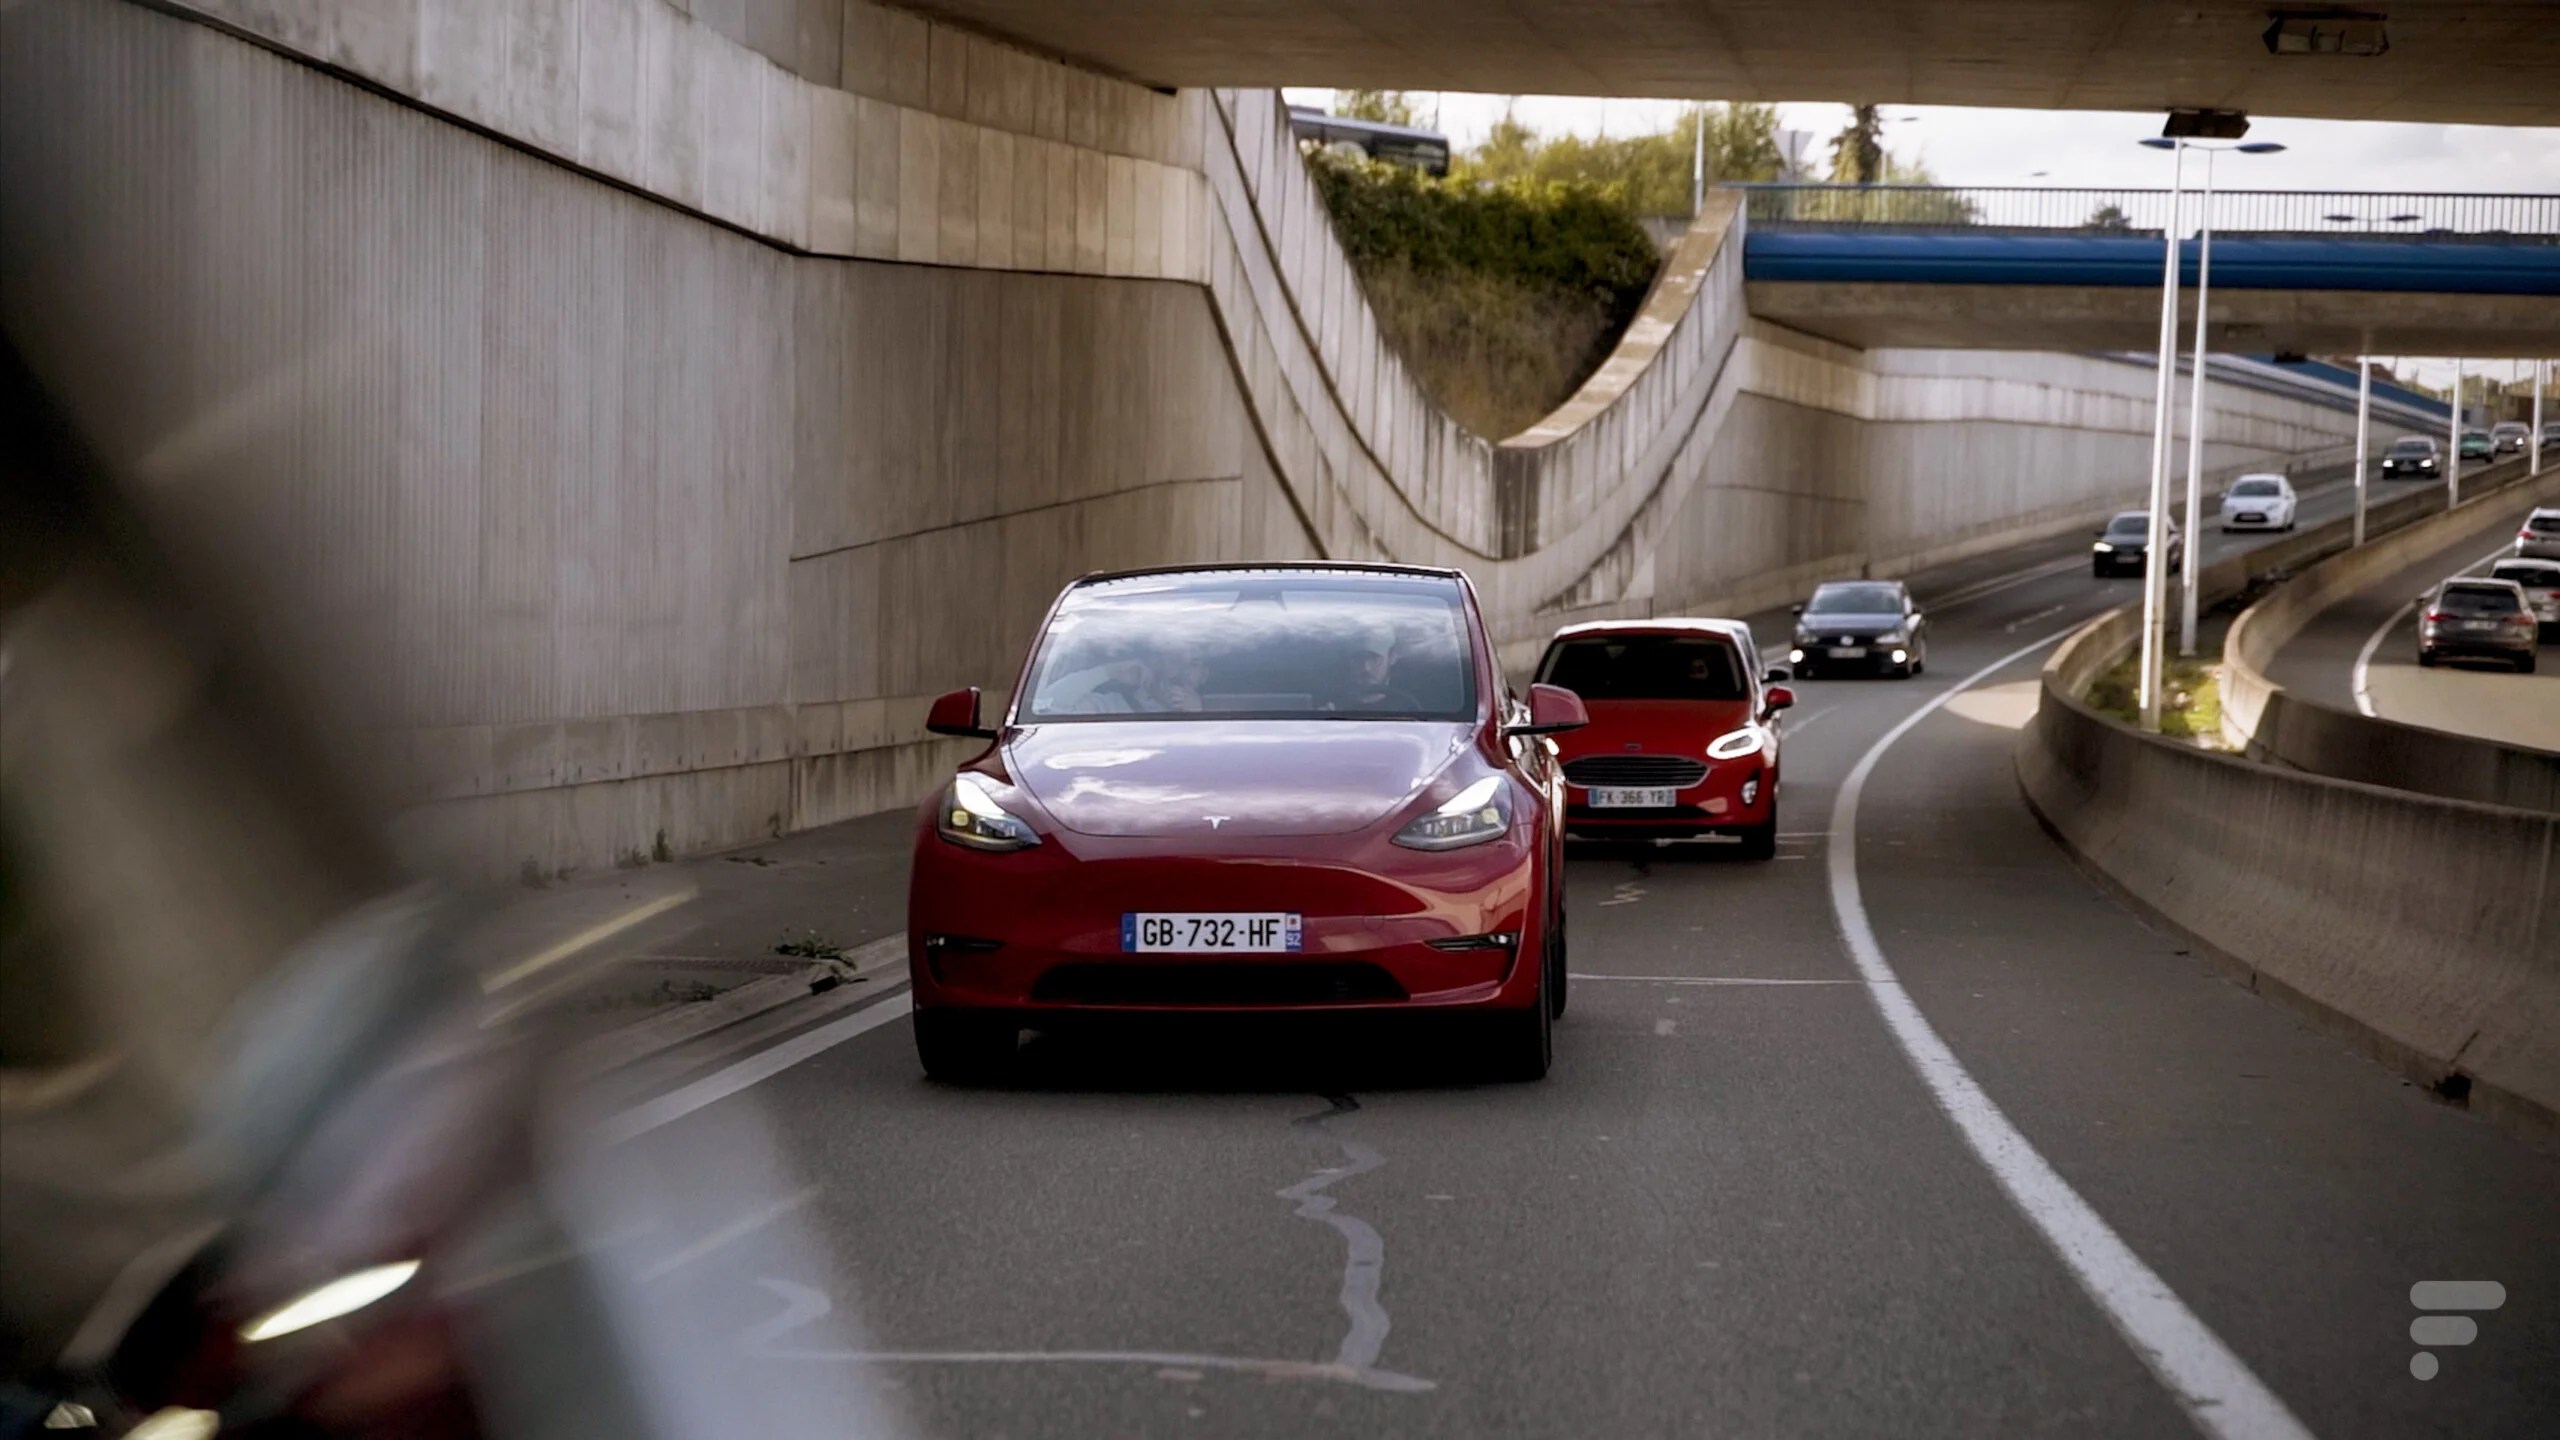 Conduite autonome : Tesla franchit un nouveau cap, tout en prudence